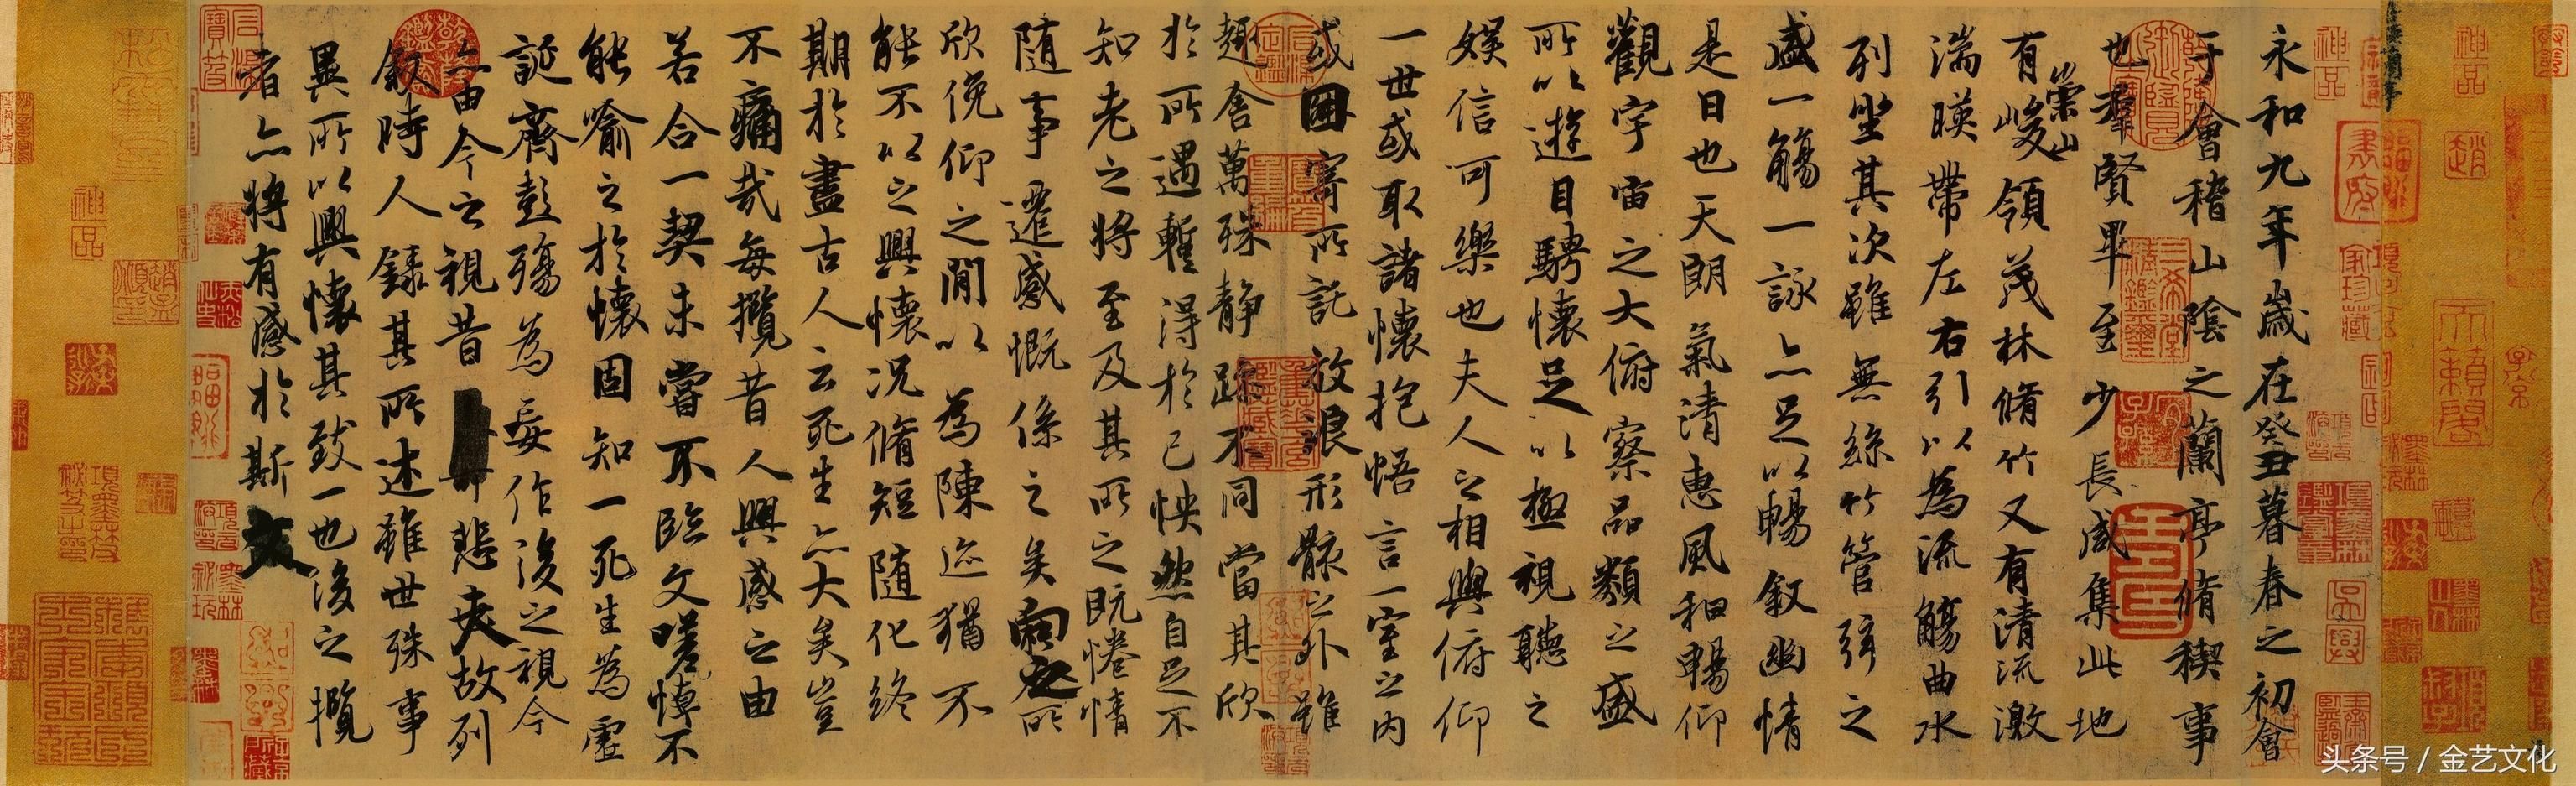 存世《兰亭序》摹本墨迹之中,以唐冯承素神龙本最为著名,流传最广